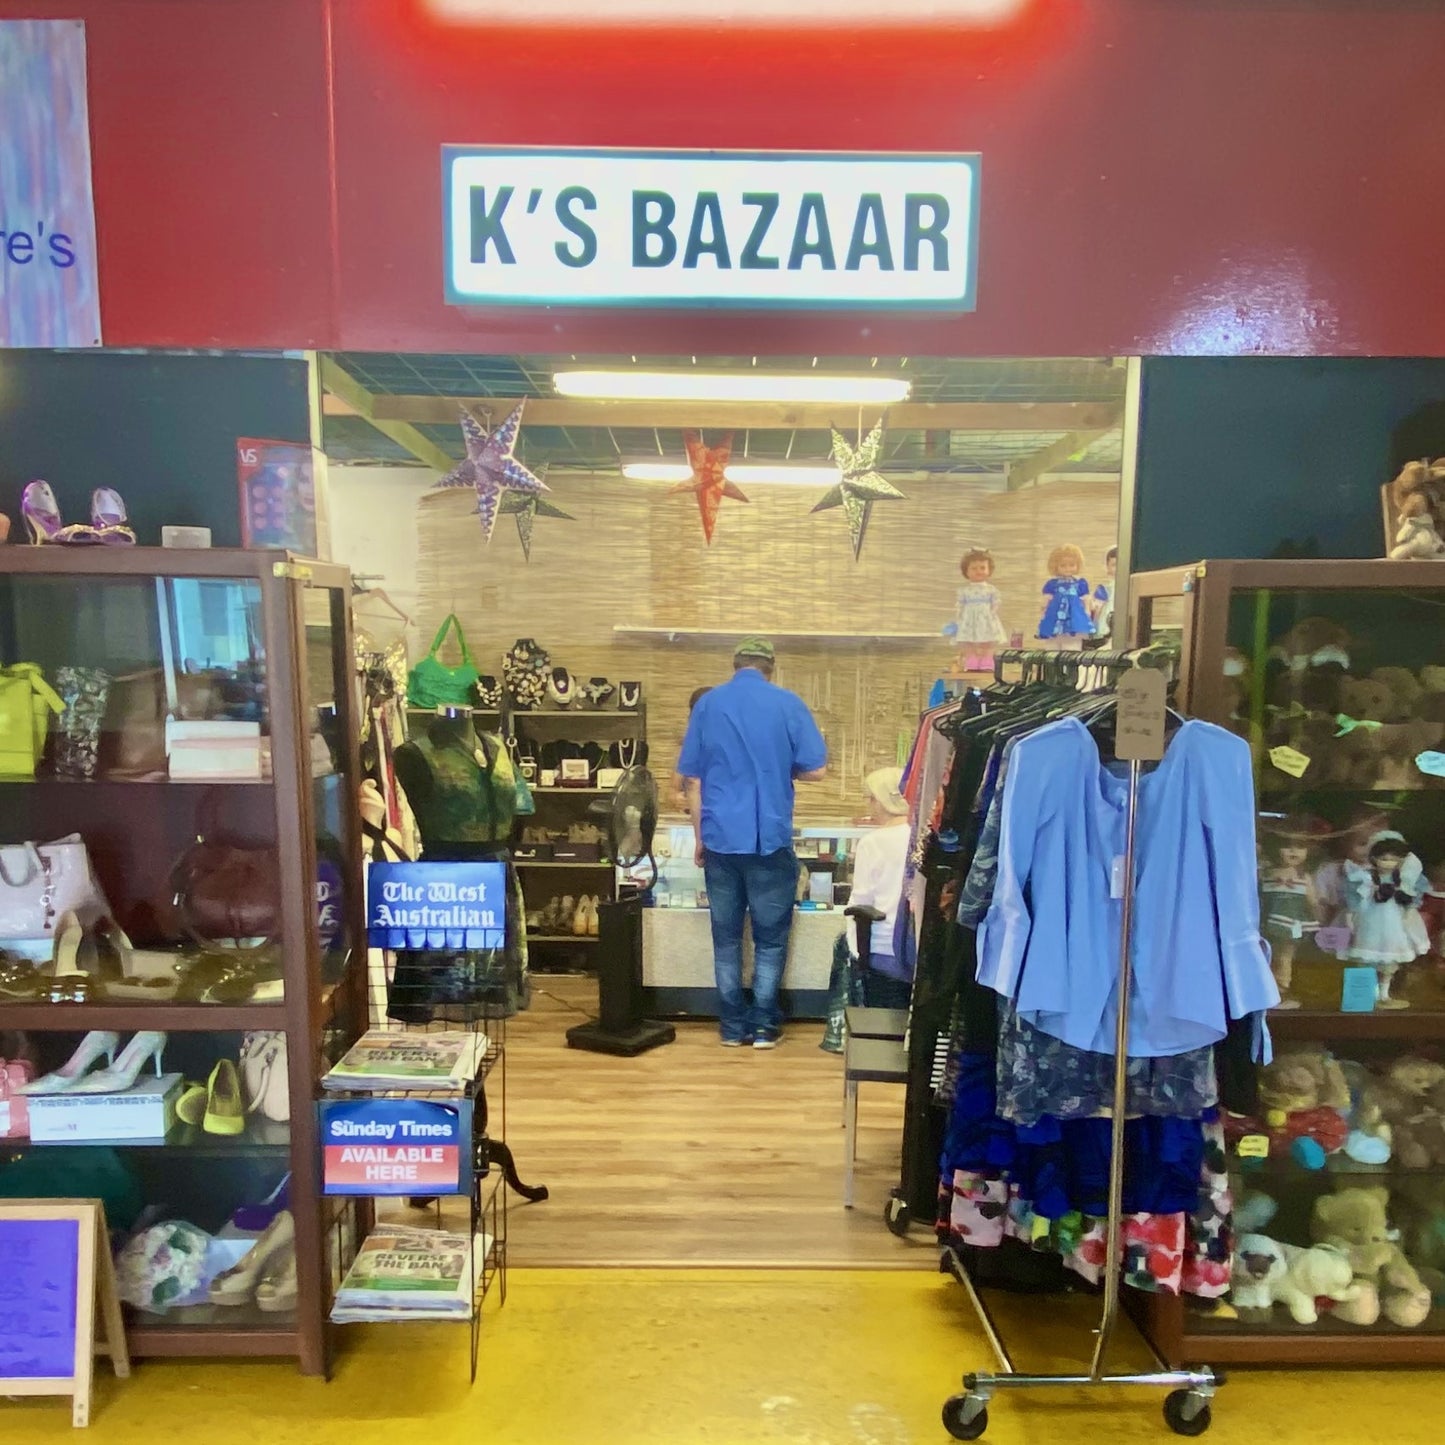 93-95 - K's Bazaar